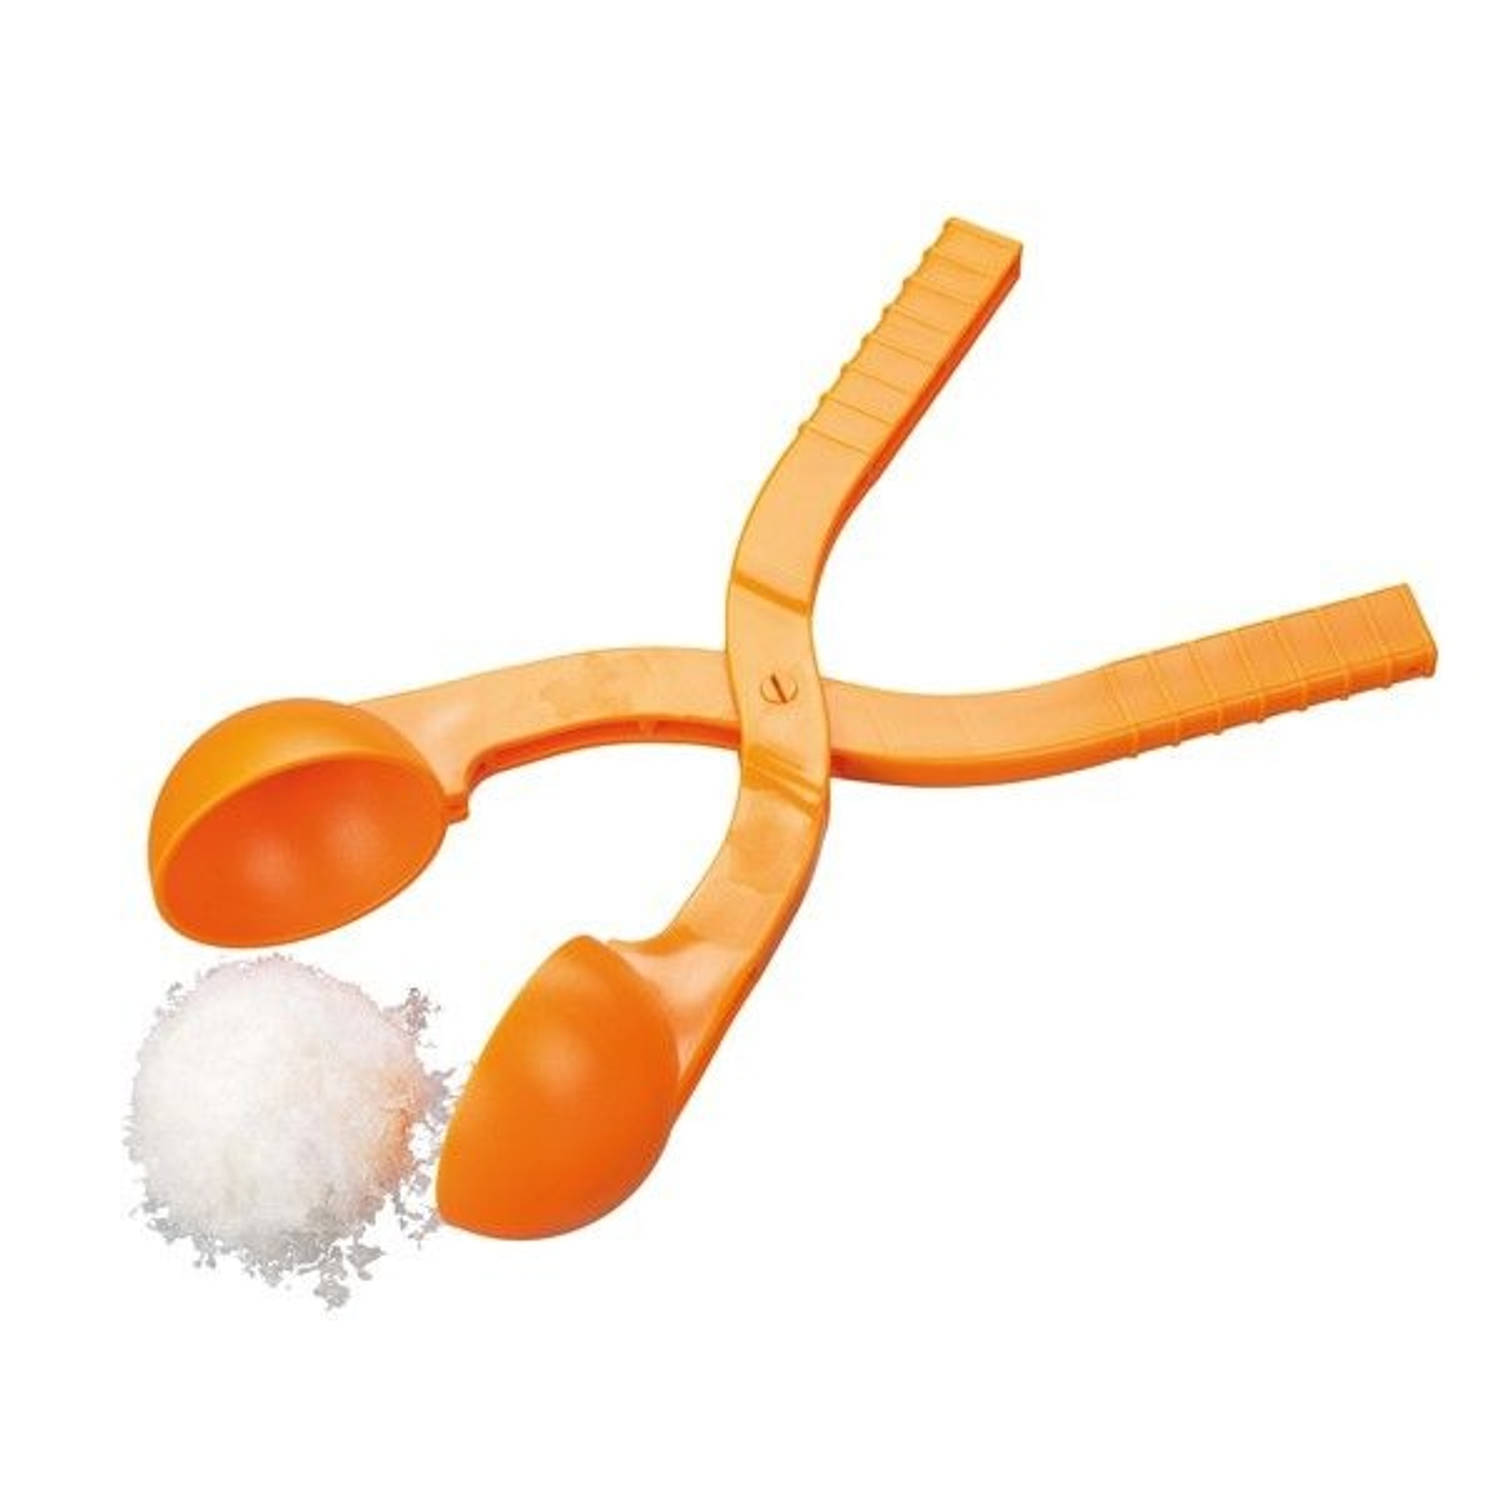 Sneeuwbal Maker - Oranje